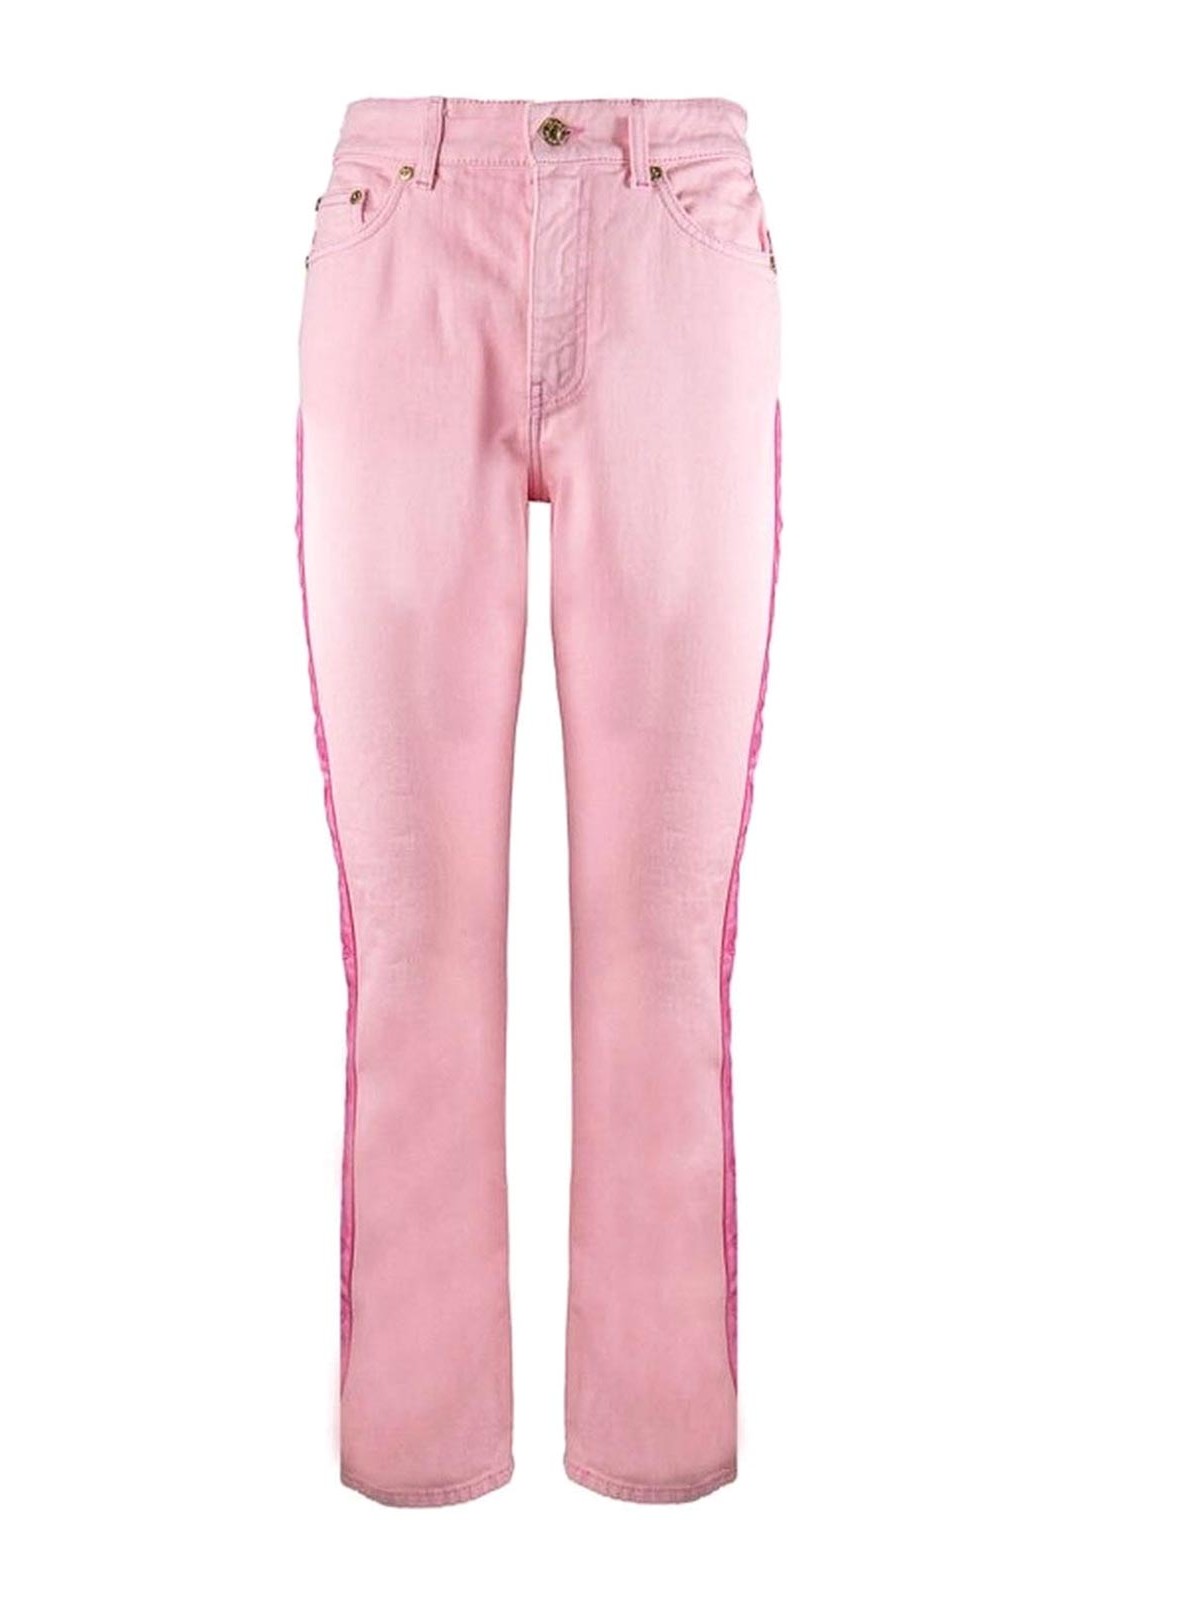 Chiara Ferragni Pink Pants